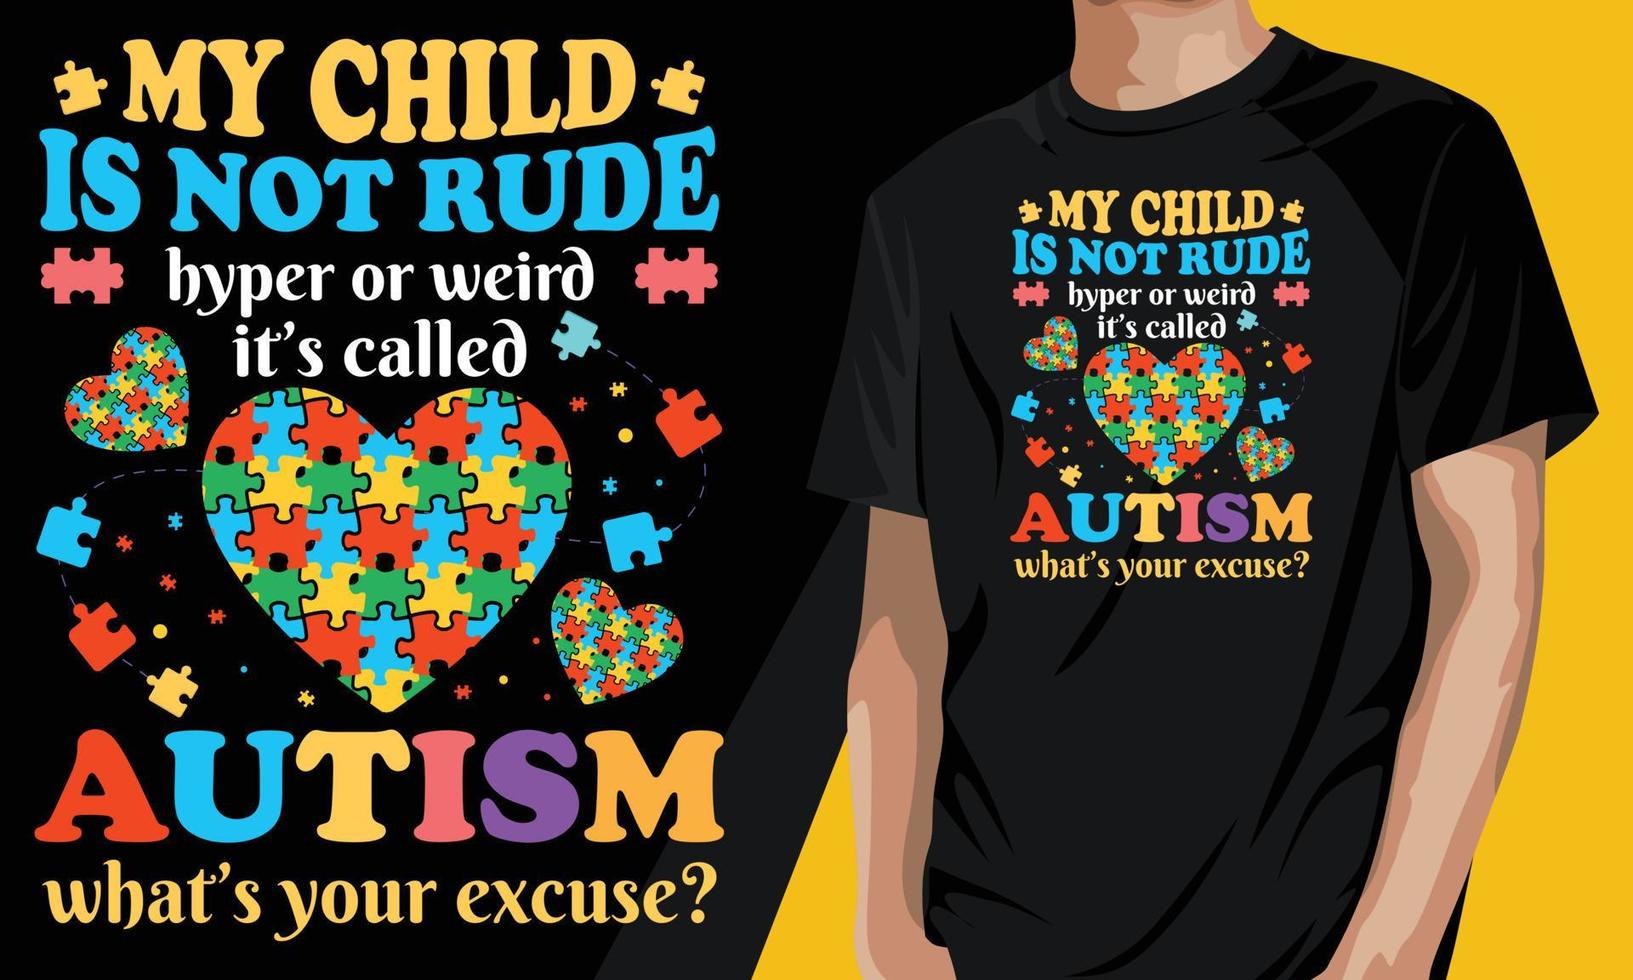 mijn kind is niet onbeleefd hyper of bedraad, het wordt autisme genoemd, wat is je excuus. autisme bewustzijn dag t-shirt ontwerp vector